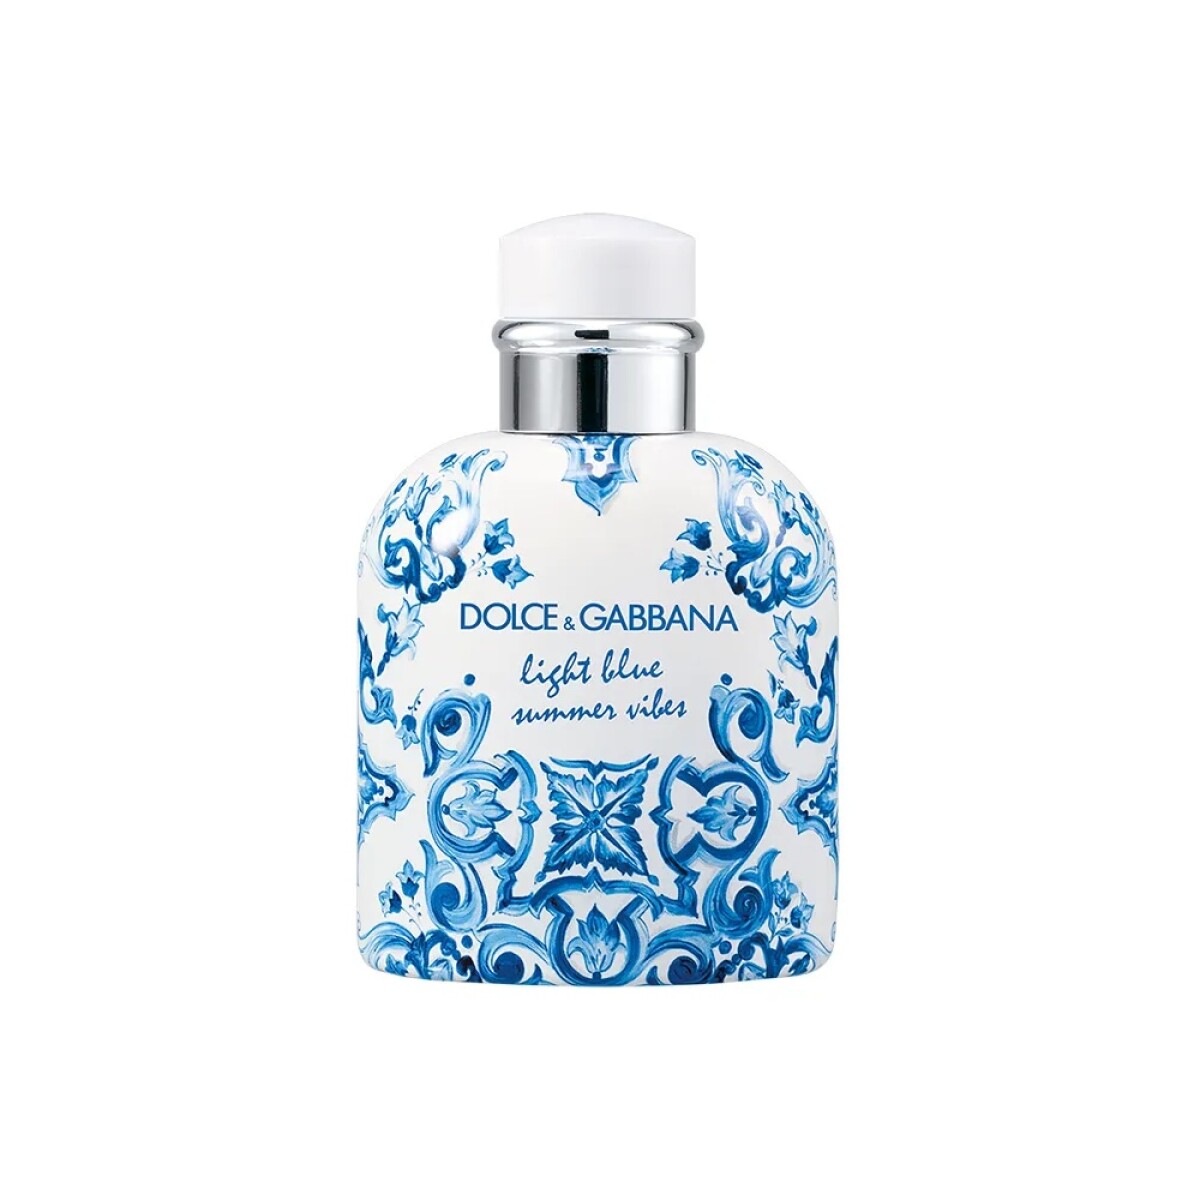 Perfume Dolce&Gabbana Lightblue Summer Vibes Edt 125ml 